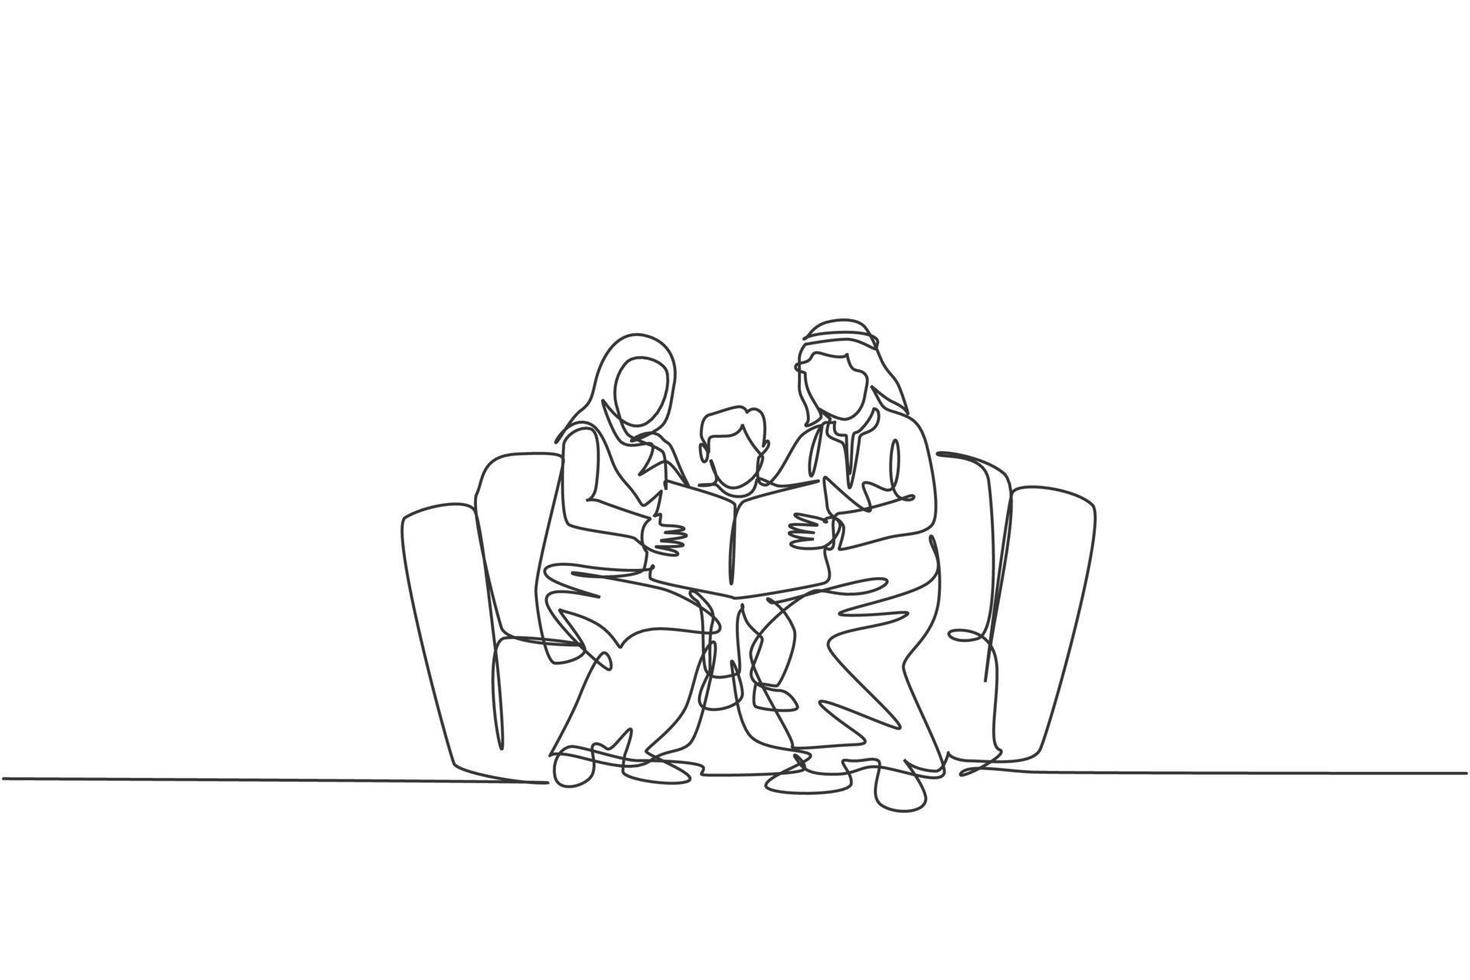 disegno continuo a una linea di un giovane genitore arabo seduto sul divano con il proprio ragazzo, leggendo un libro. felice concetto di famiglia genitorialità musulmana islamica. illustrazione vettoriale di disegno grafico a linea singola